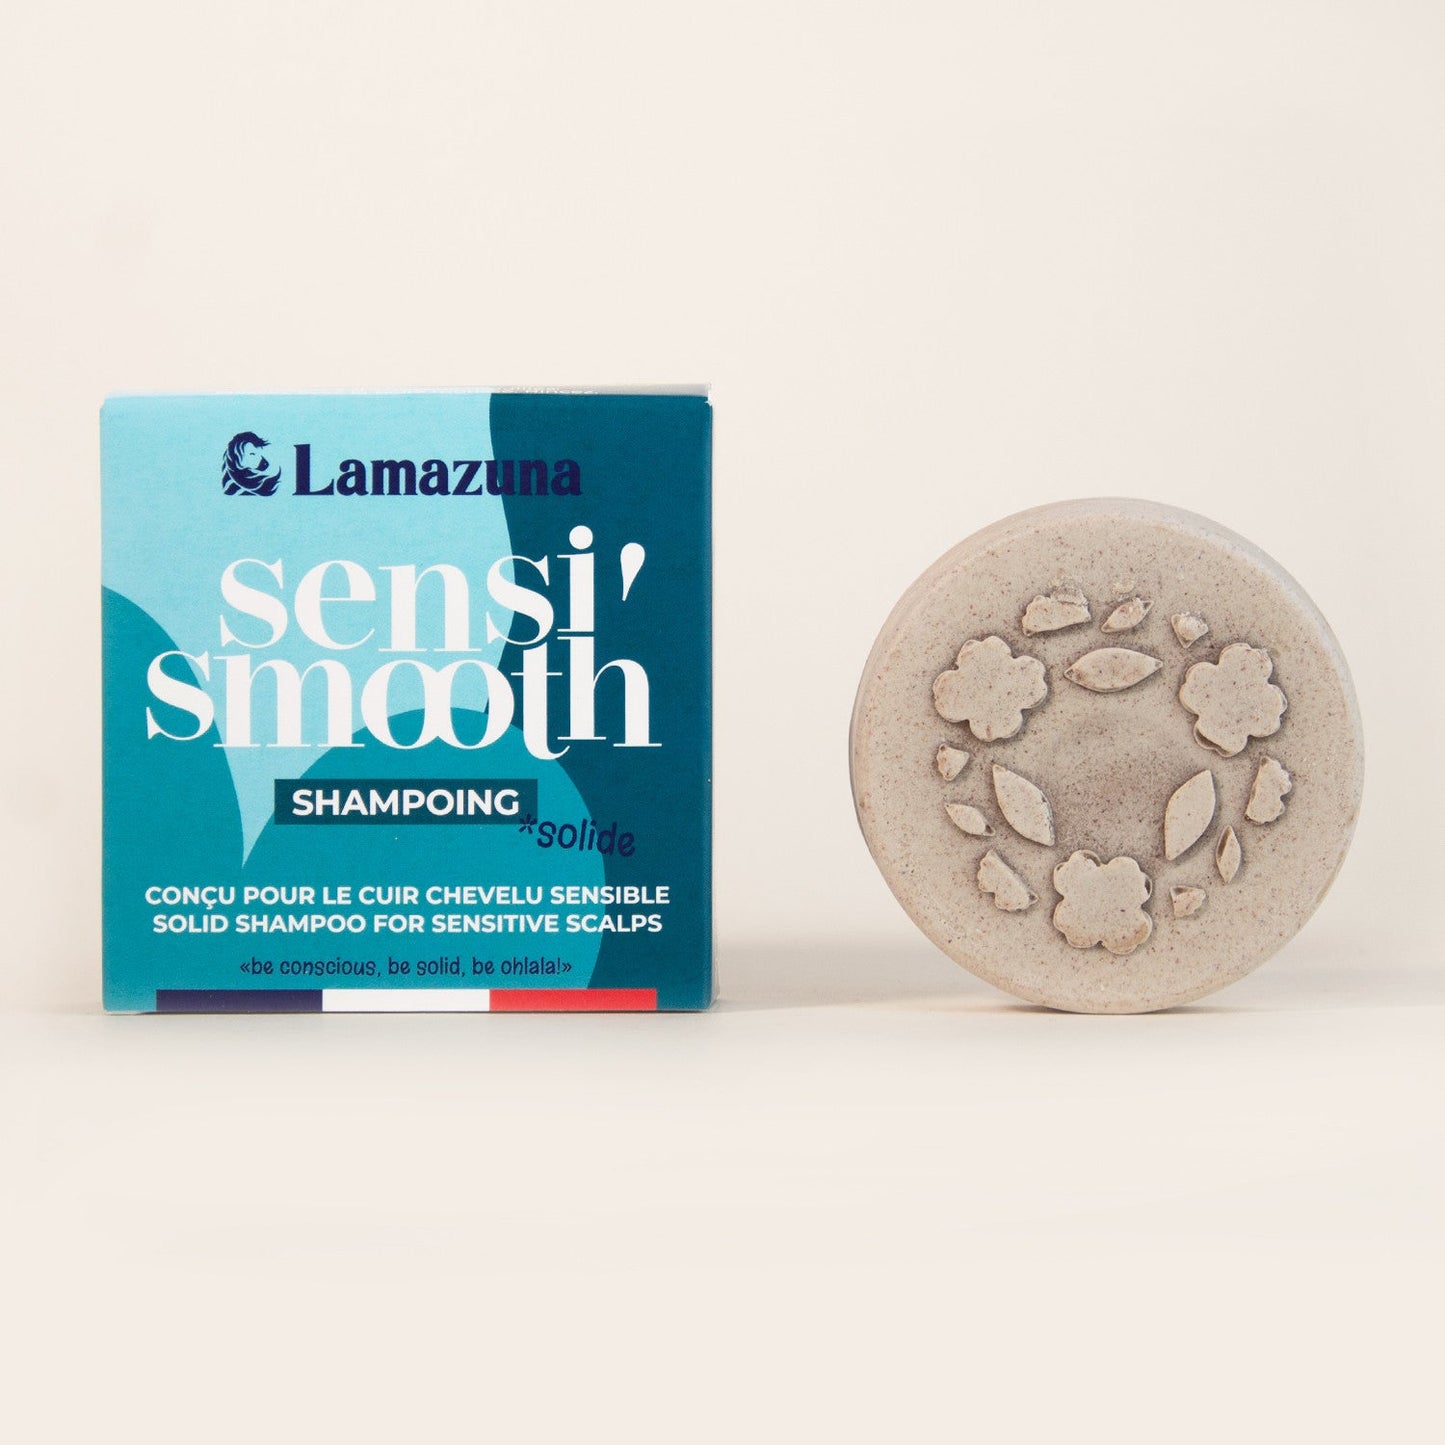 Lamazuna -- Shampoing solide pour cuir chevelu sensible, huile de chaulmoogra et poudre de pivoine - 70 ml